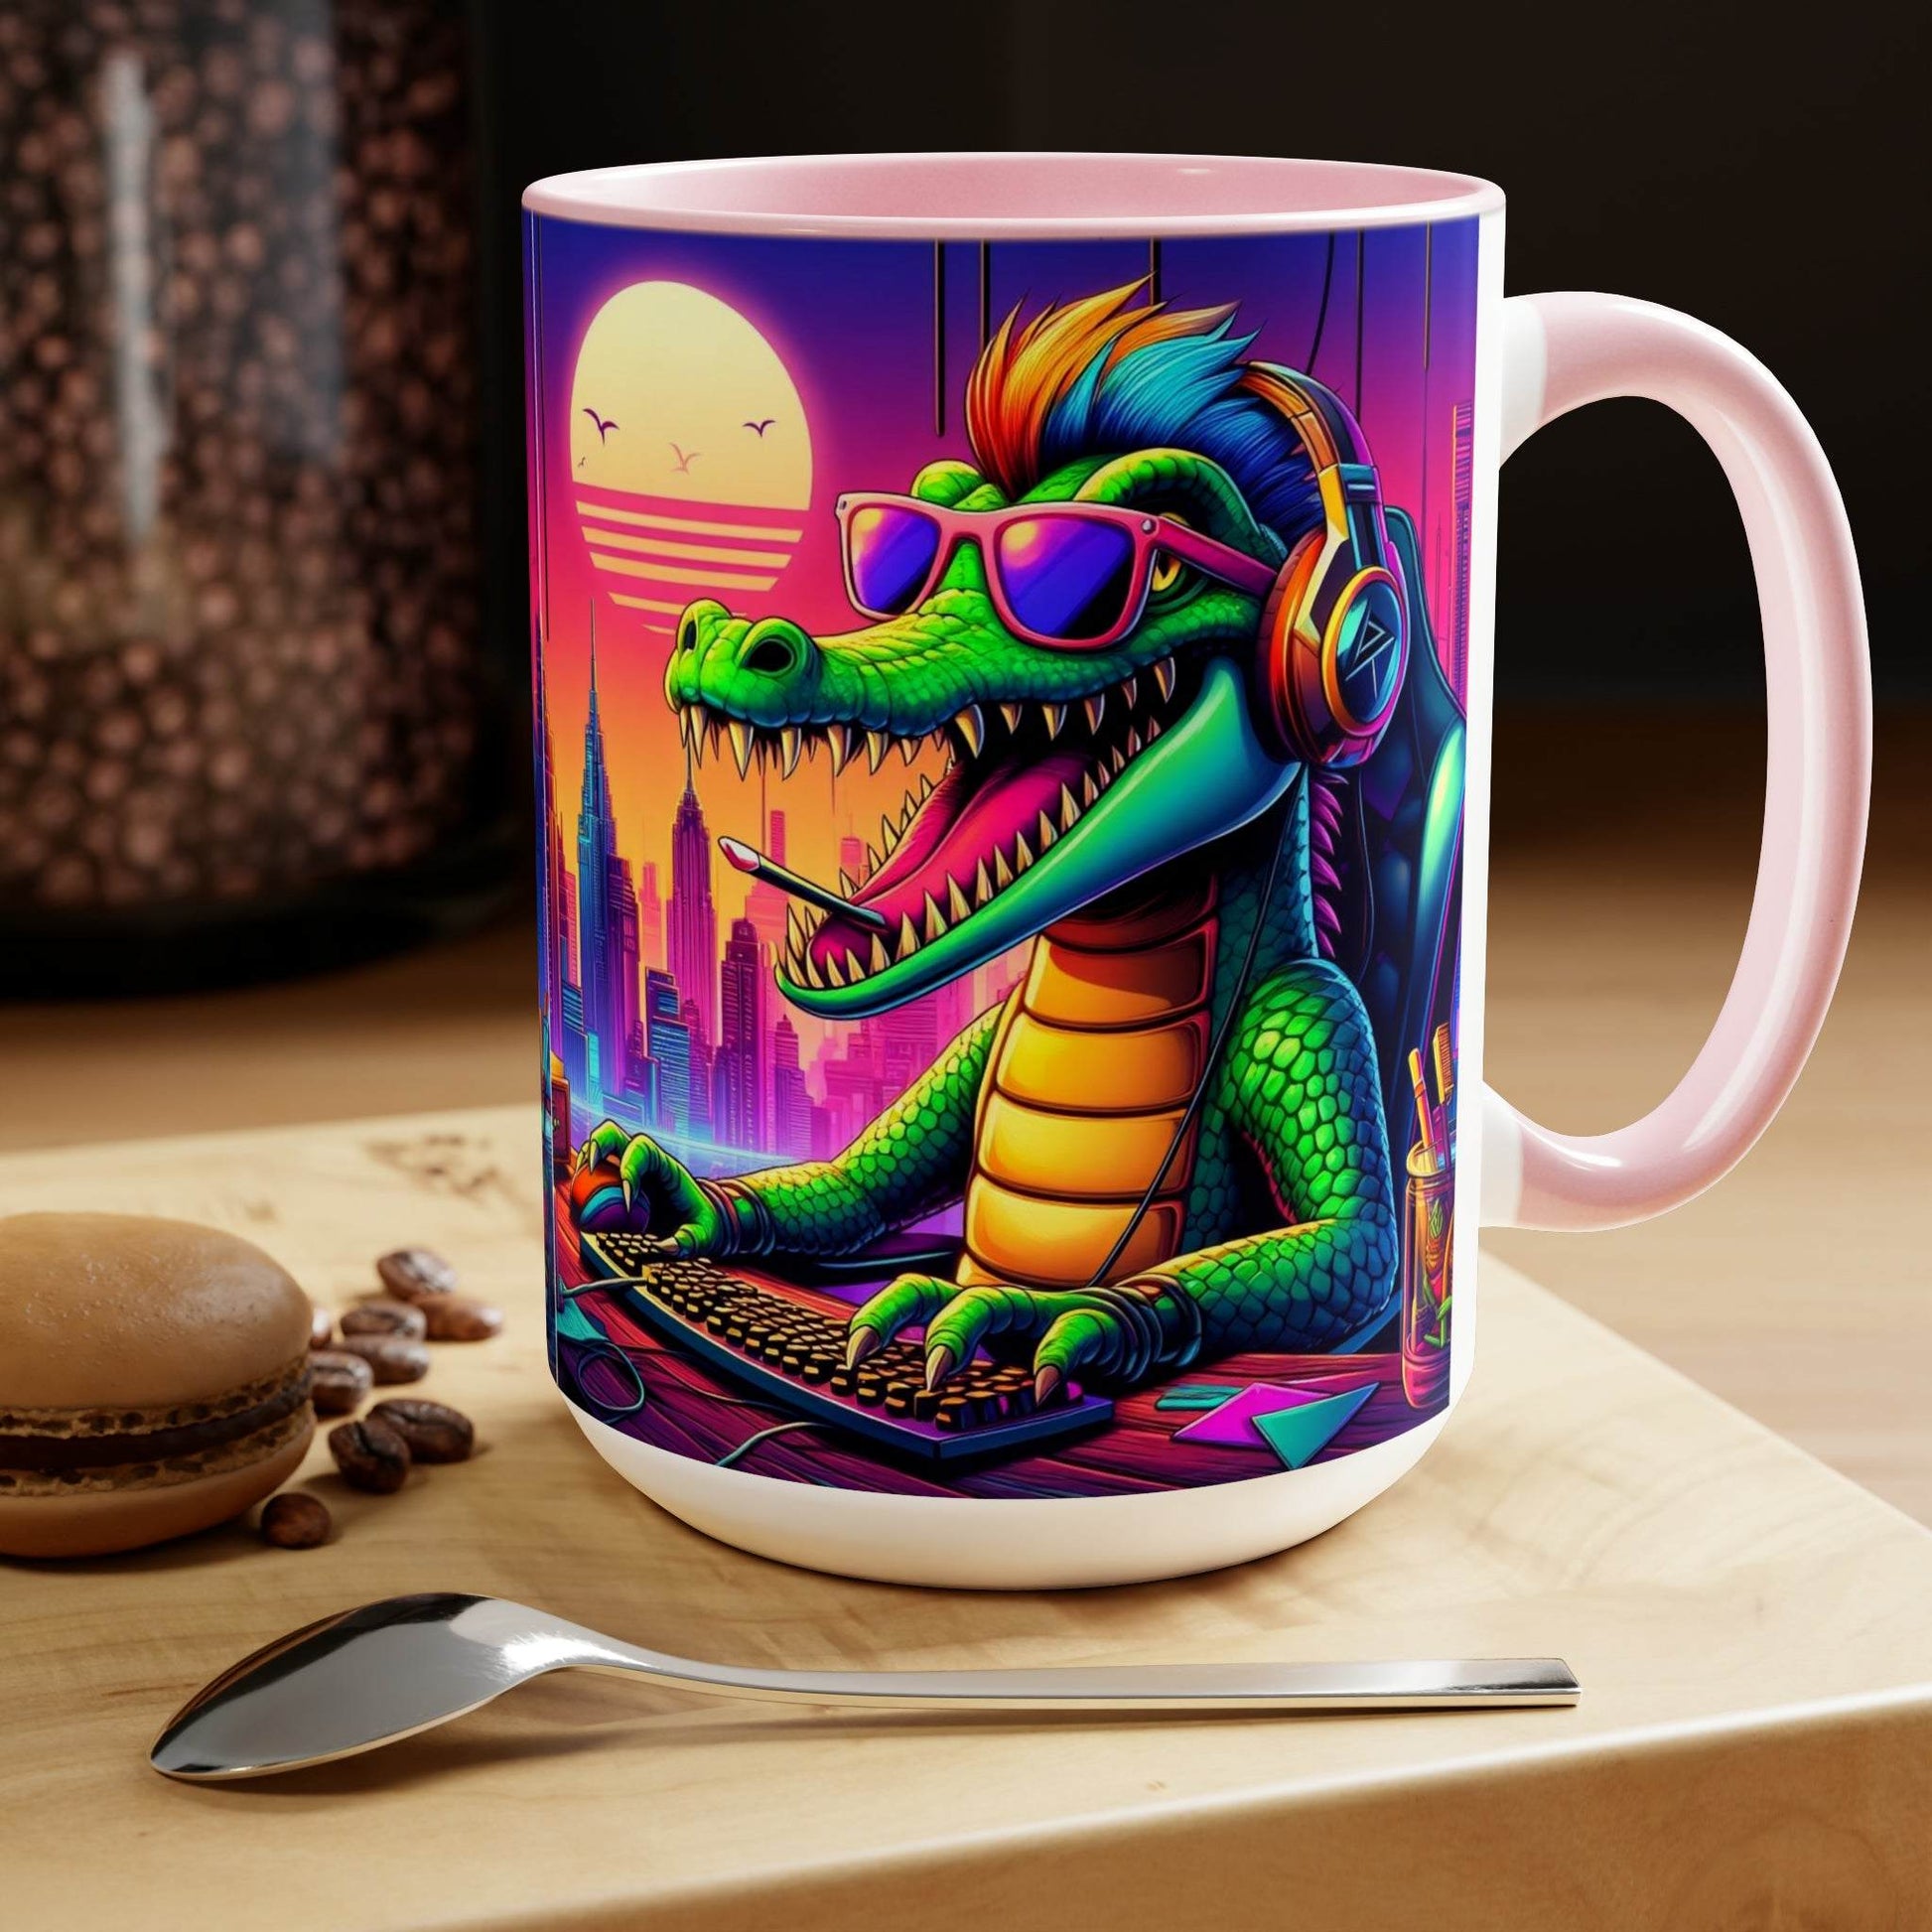 gaming mug, crocodile mug